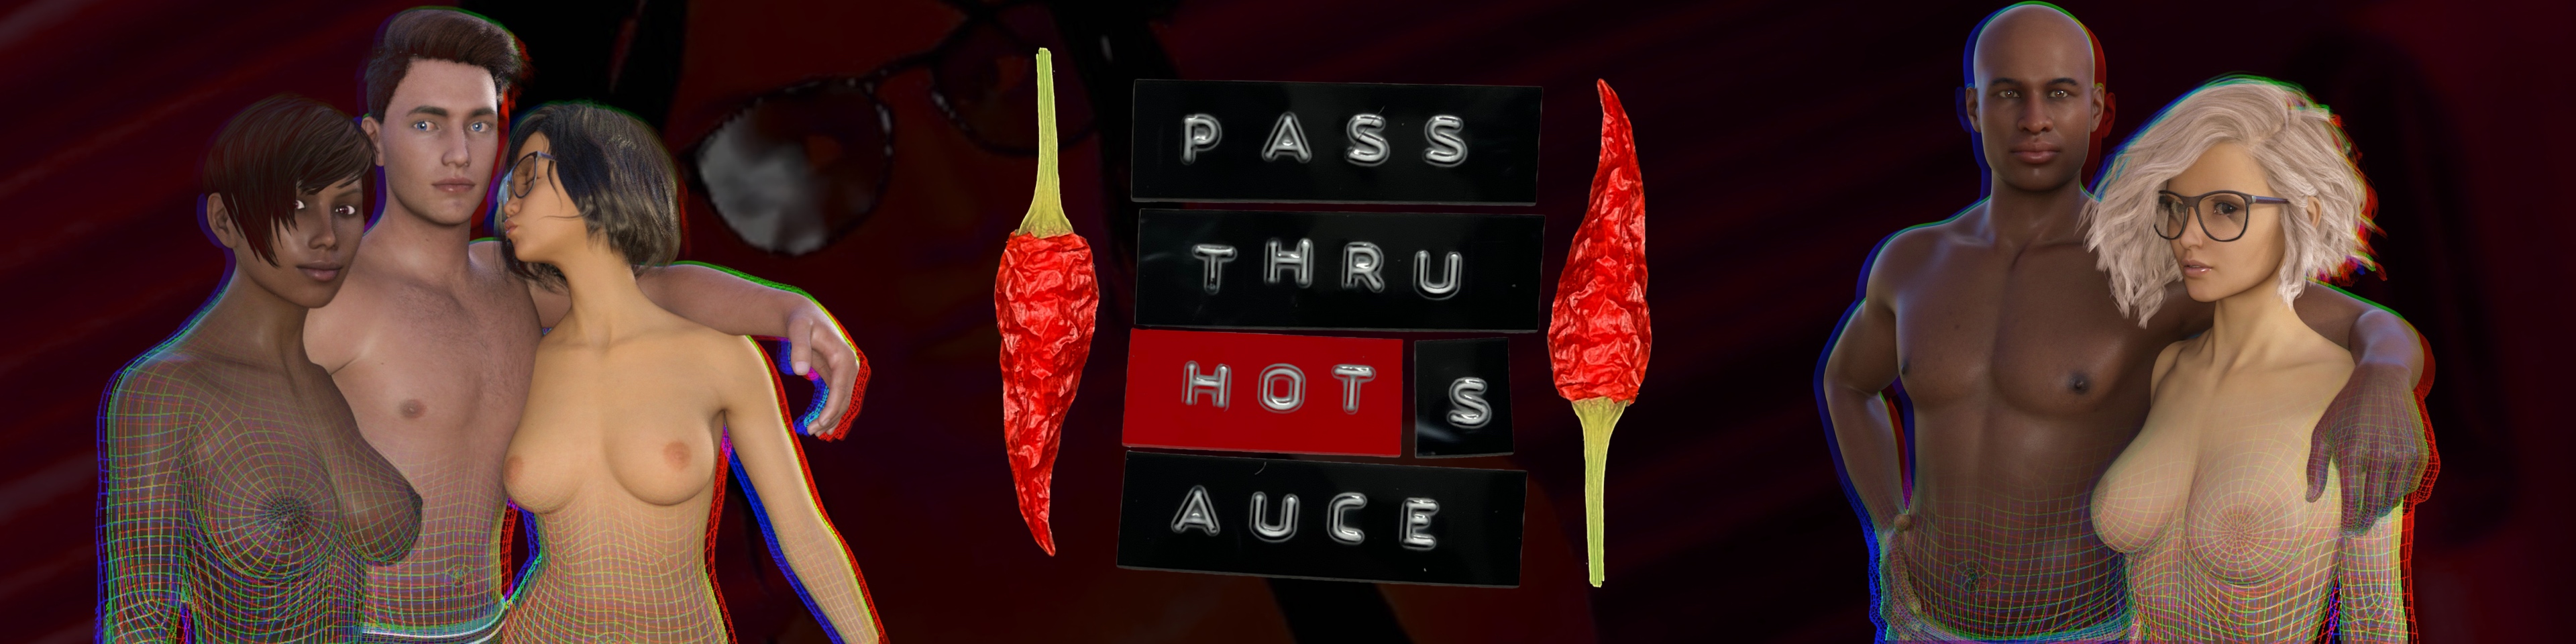 Pass Thru Hot Sauce